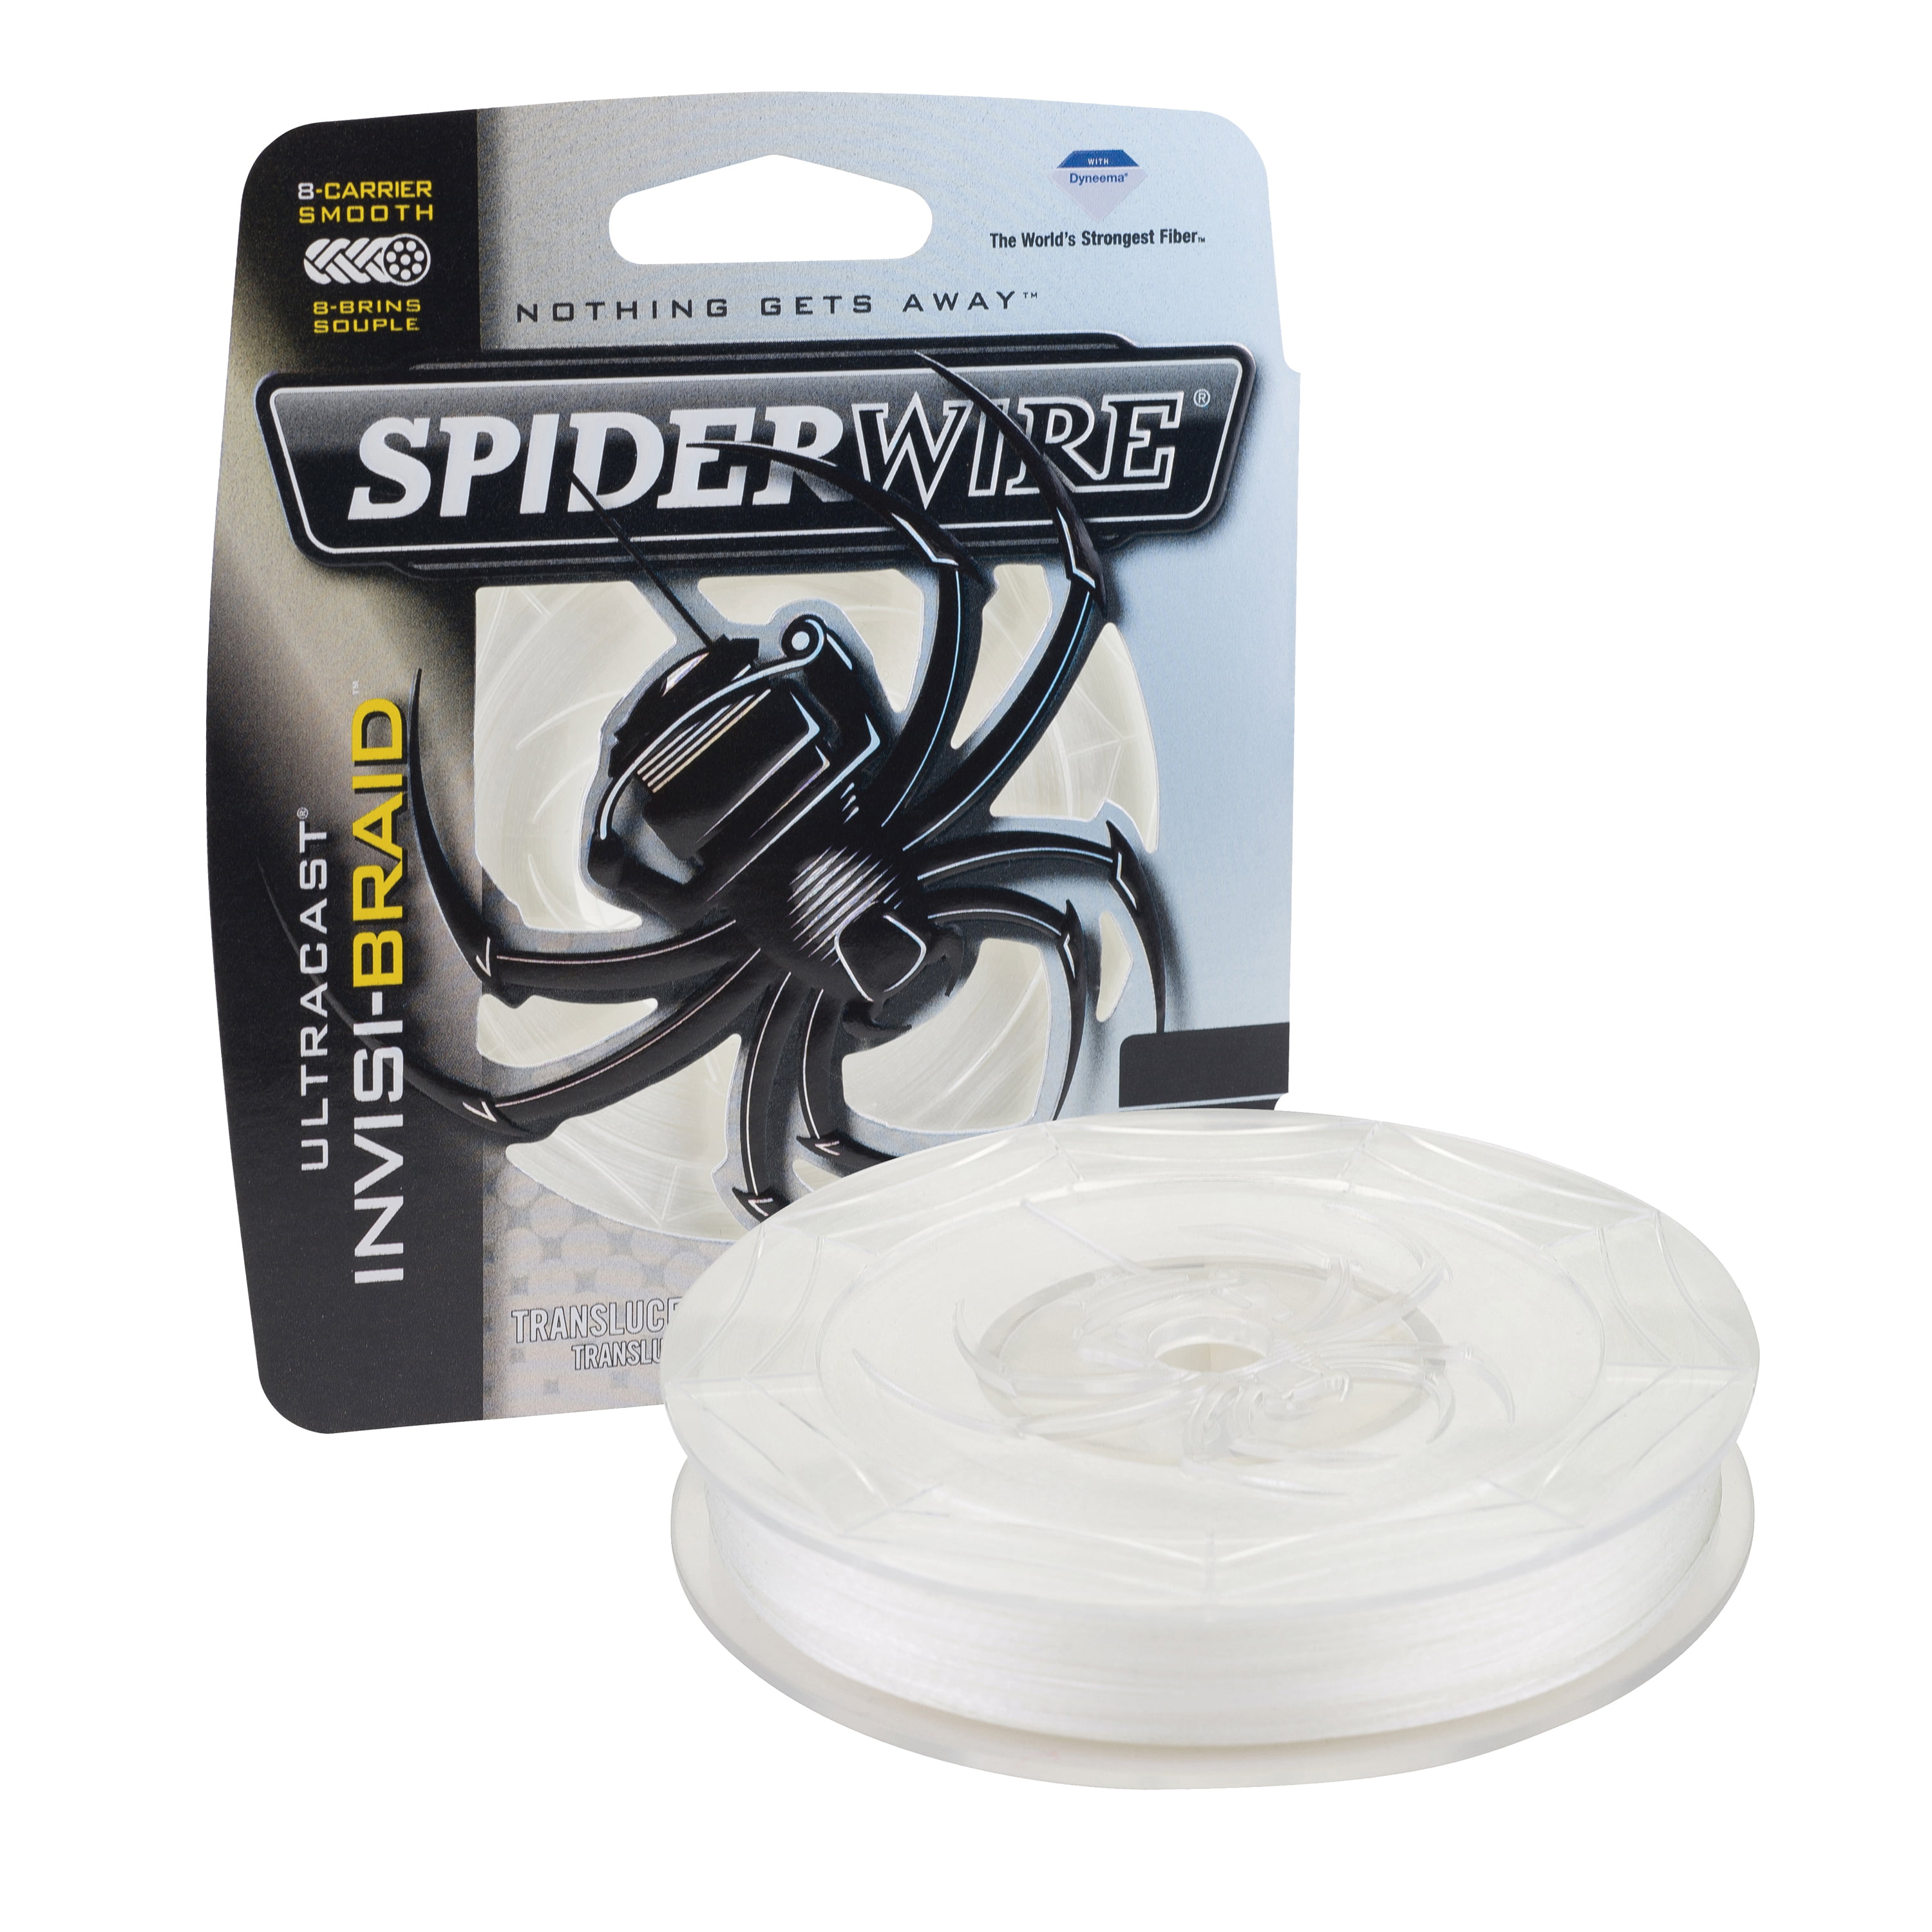 Megatibia Trocando Spider silk por Spool of yarn 